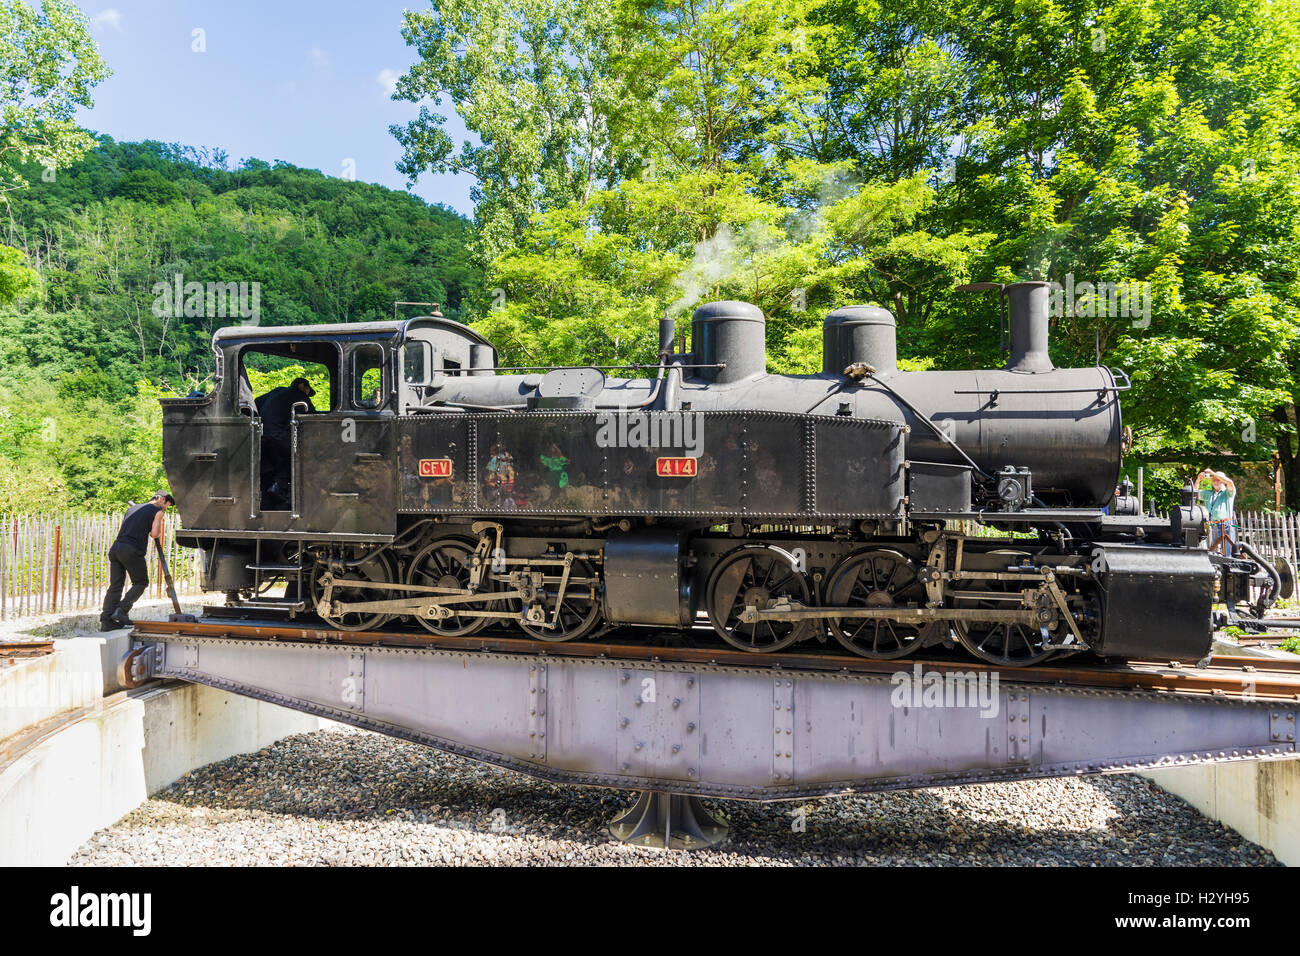 Locomotive turntable on the Train de l'Ardèche tourist train, Colombier le Vieux – Saint-Barthélémy le Plain, Ardèche, France Stock Photo